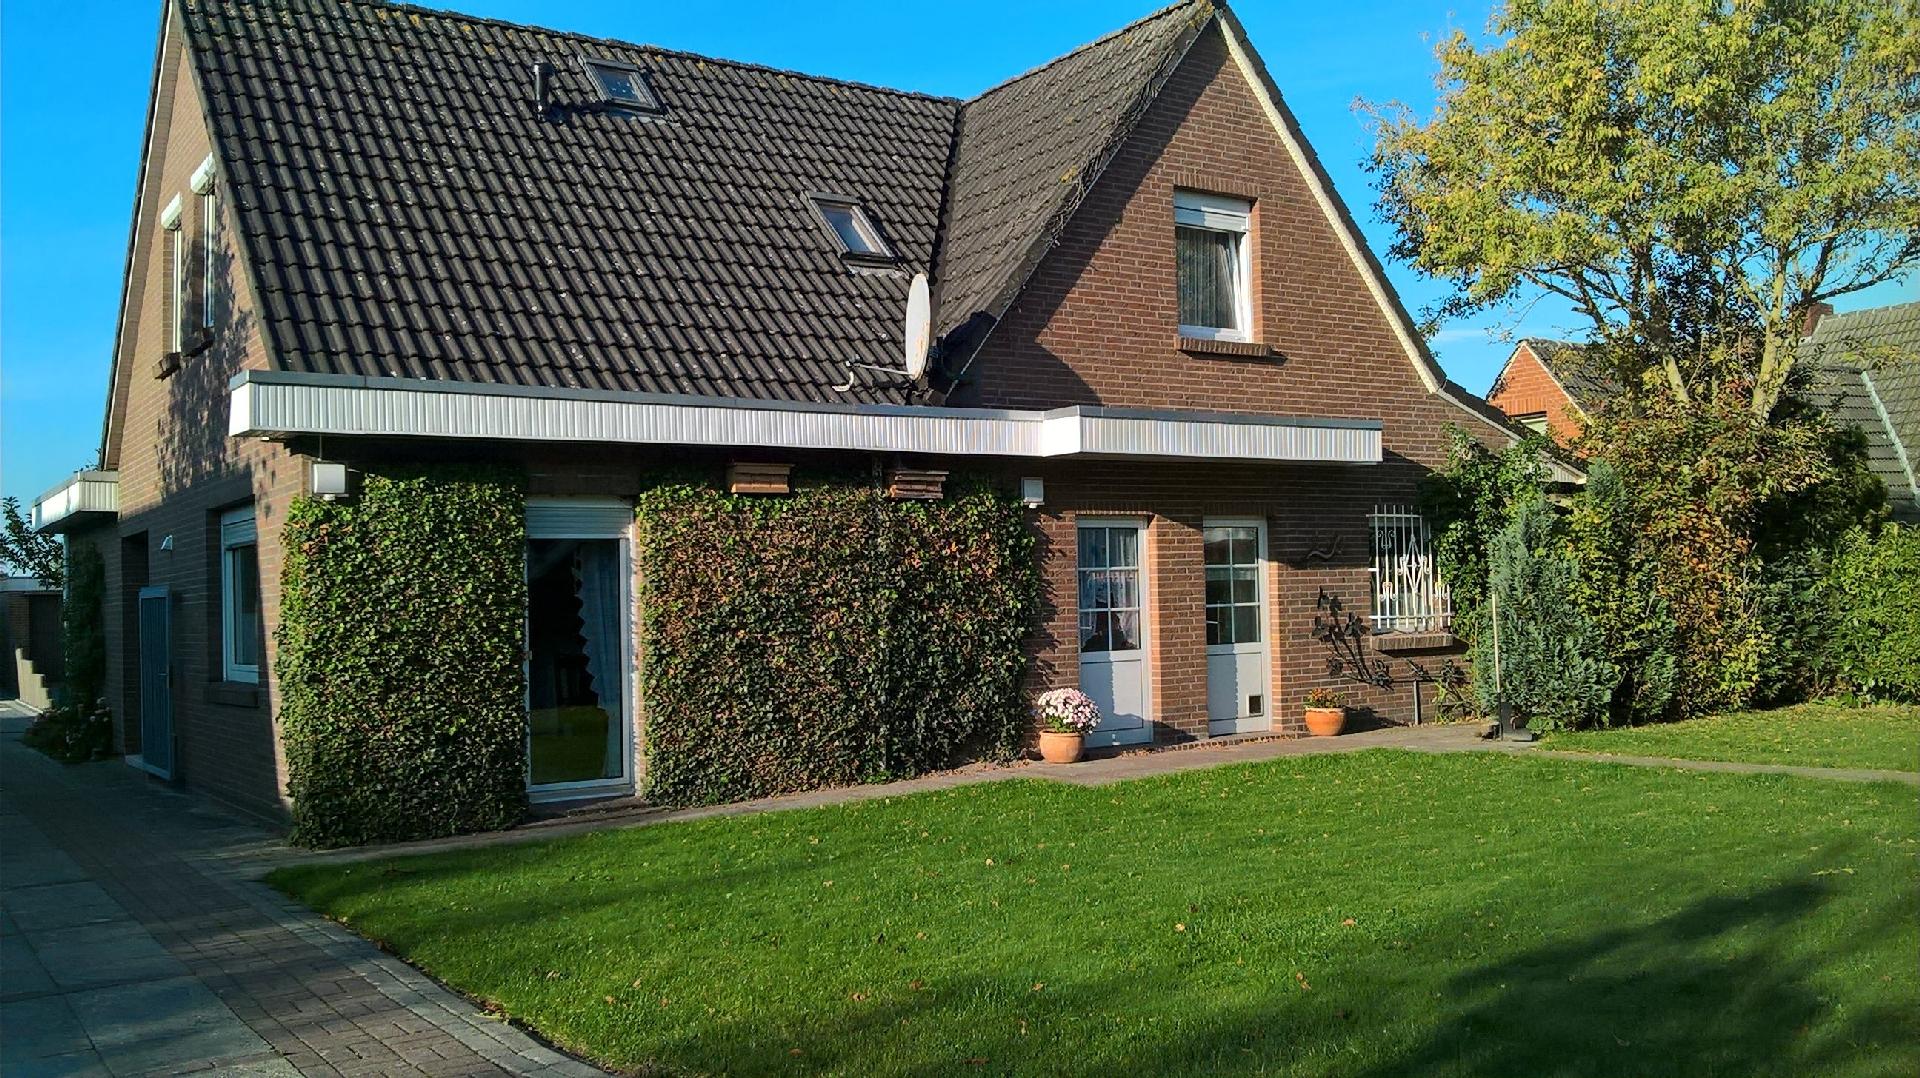 Ferienwohnung mit Garten und Gartenhaus  in Ostfriesland